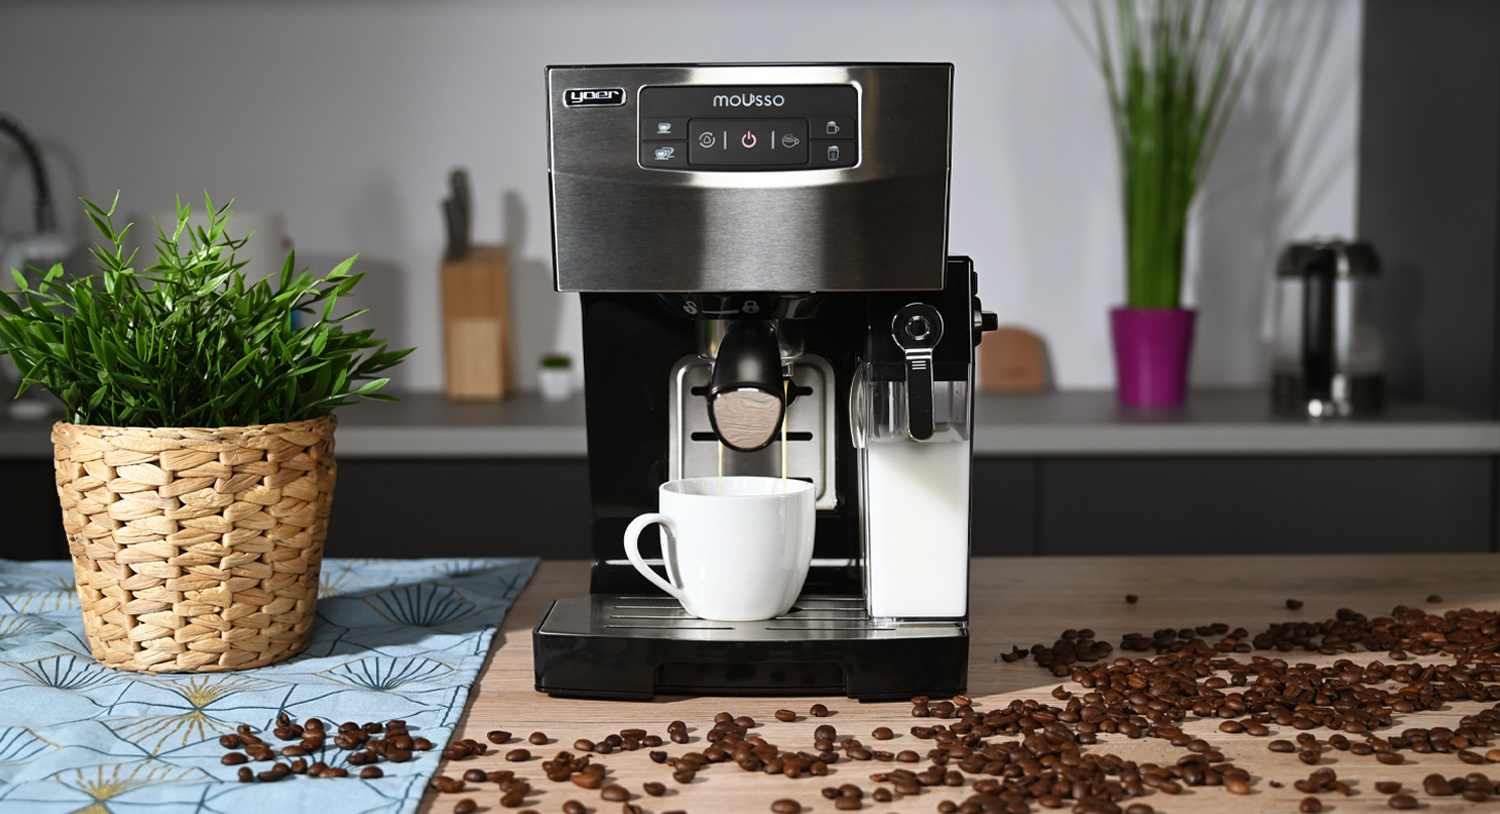 ekspres-do-kawy-srebrny-czarny-mousso-yoer-zbiornik-na-mleko-kawa-ziarna-kawy-aranżacja-produkt-urządzenie-sprzęt